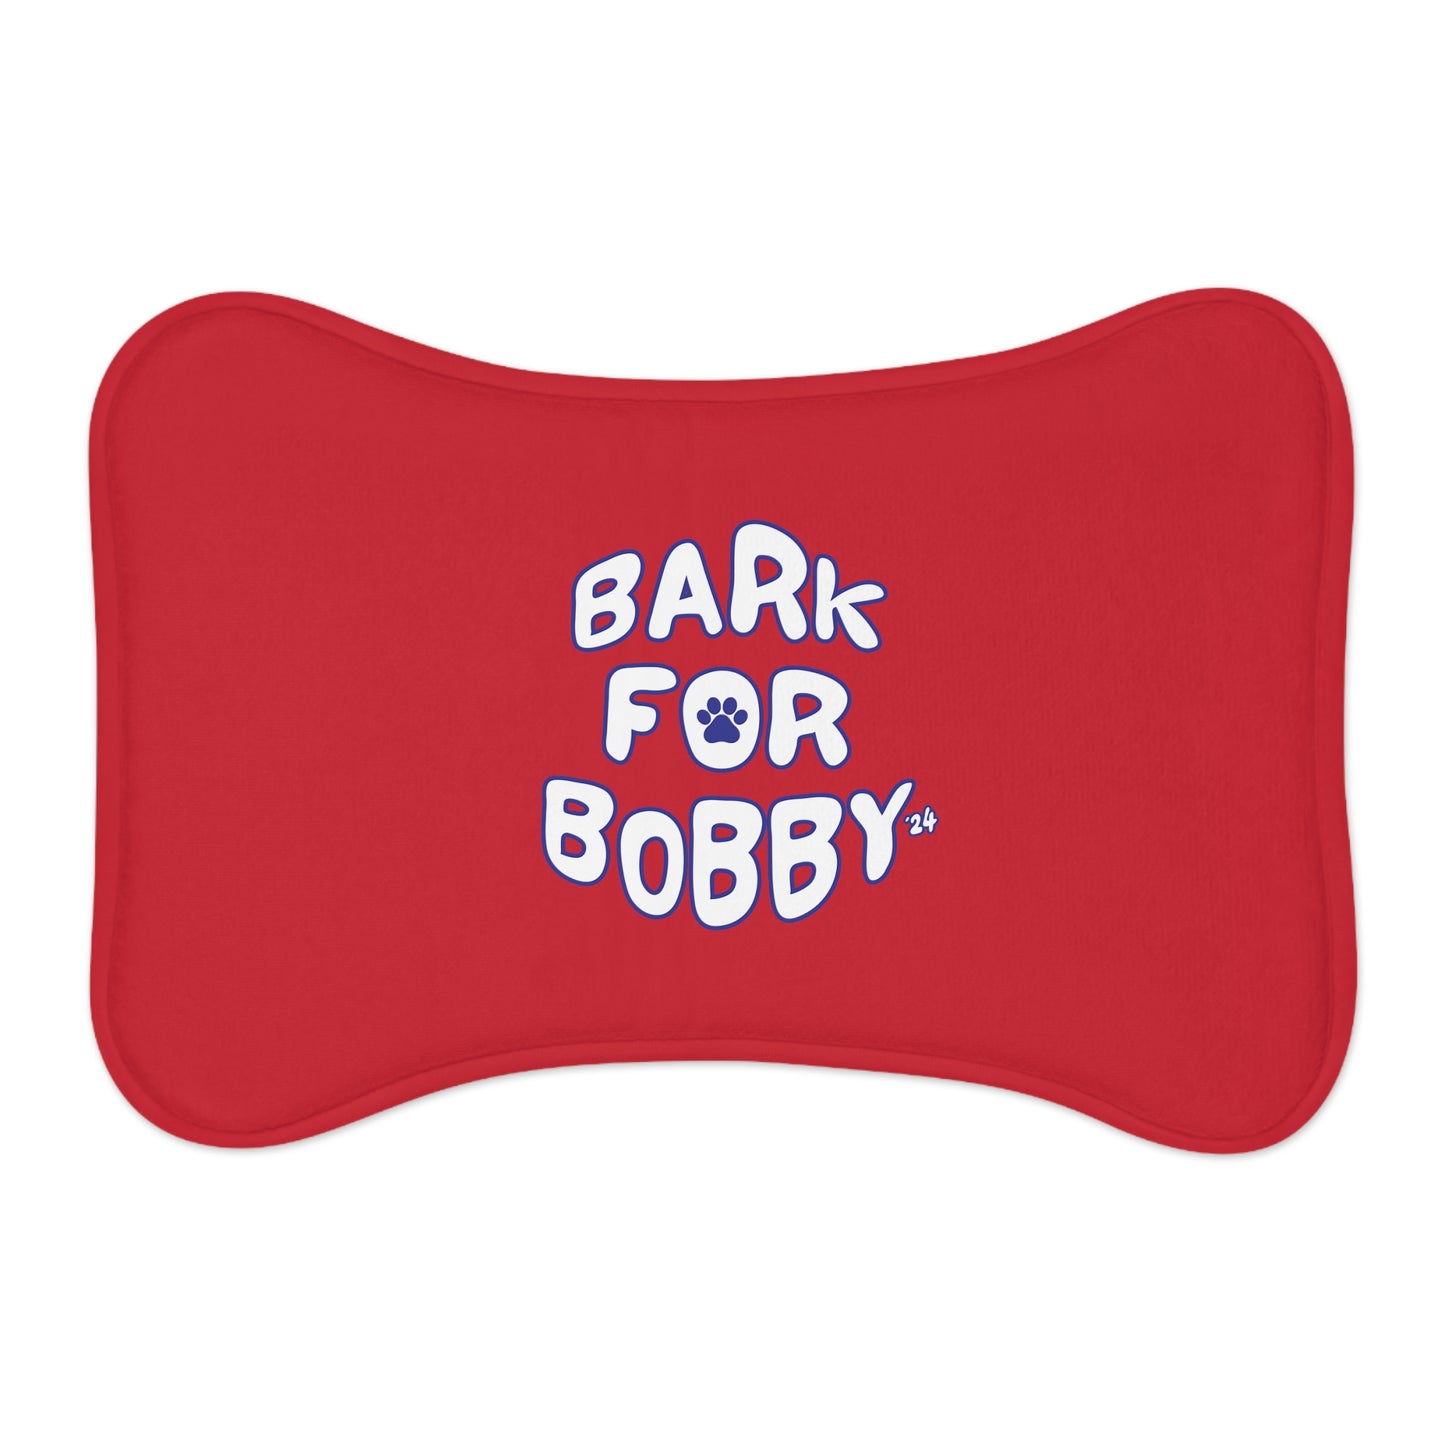 Bark for Bobby Pet Red Feeding Mats